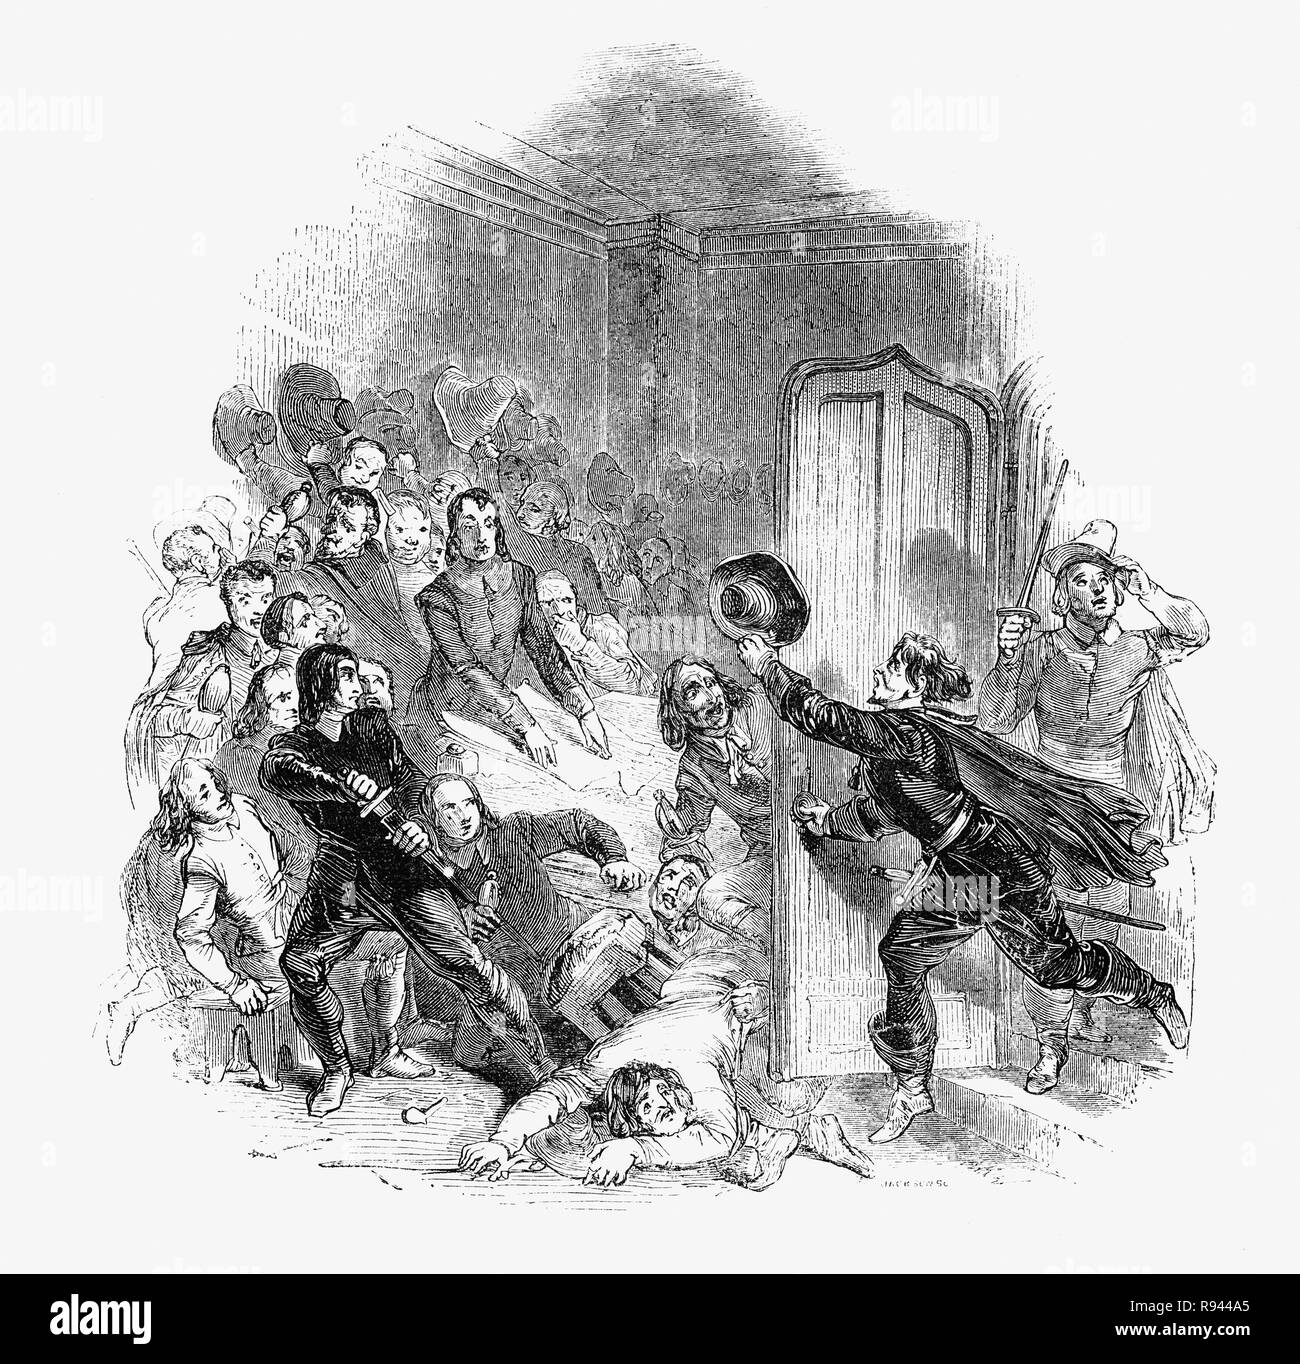 Une scène d'Hudibras, une polémique satirique écrit par Samuel Butler (1613 - 1680), poète et satiriste, principalement contre les Parliamenterians,Roundheads, puritains, les Presbytériens et d'autres factions impliquées dans la guerre civile de 1642-1651. Ici un corps d'Indépendants en conseil interrompue par un messager des renseignements sur l'état de l'opinion publique pour la restauration (du roi Charles II) Banque D'Images